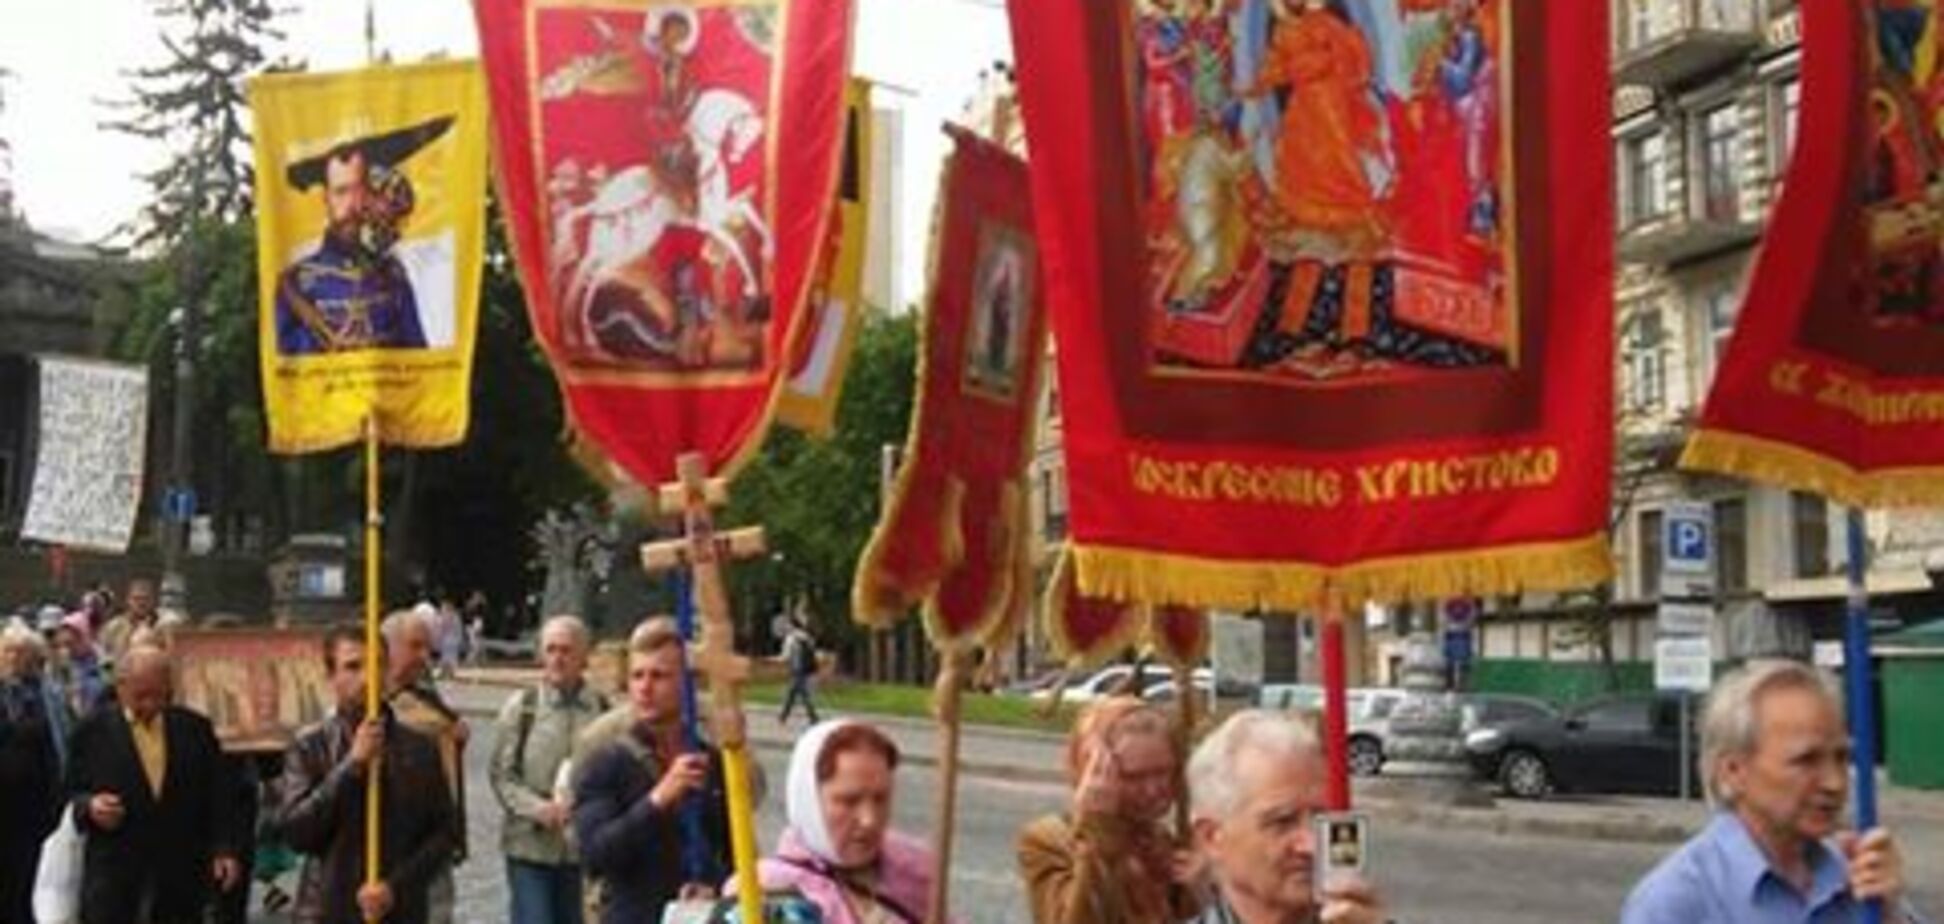 Шествие в честь Николая II в центре Киева 18-05-2018